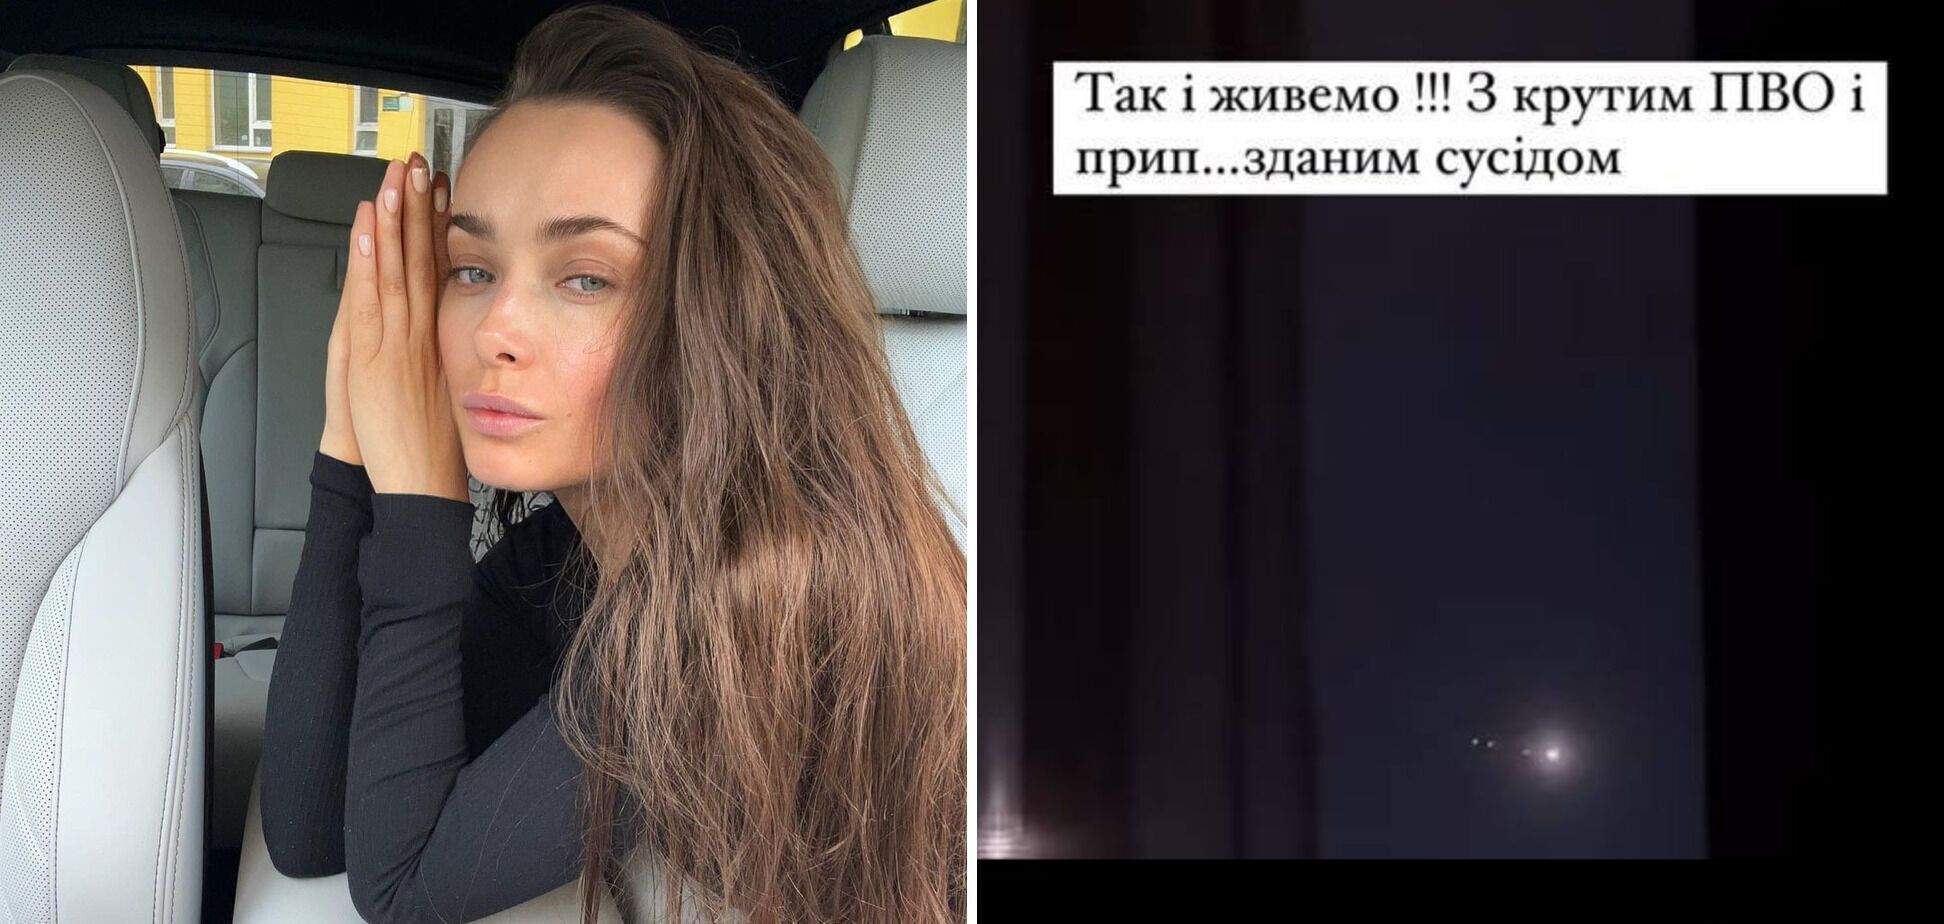 "За нее заплатили": певица Воронова, снявшая ПВО, сделала громкое заявление о Мишиной, оскандалившейся аналогичным поступком